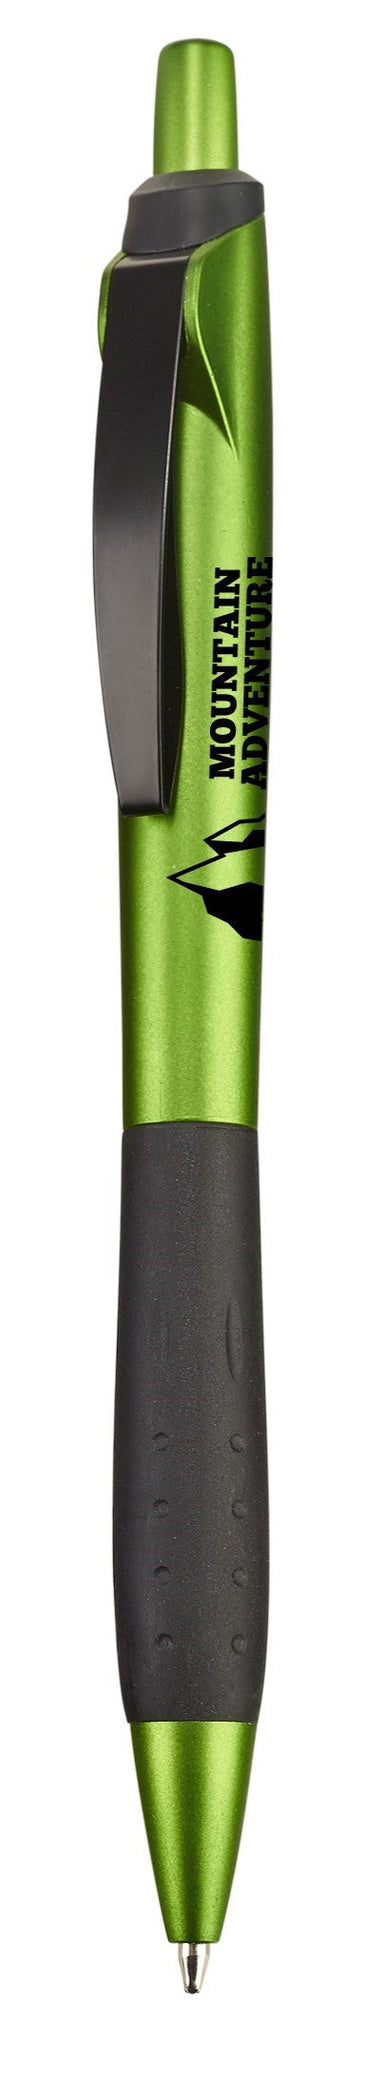 Skyline Ball Pen - Lime Only-Pens